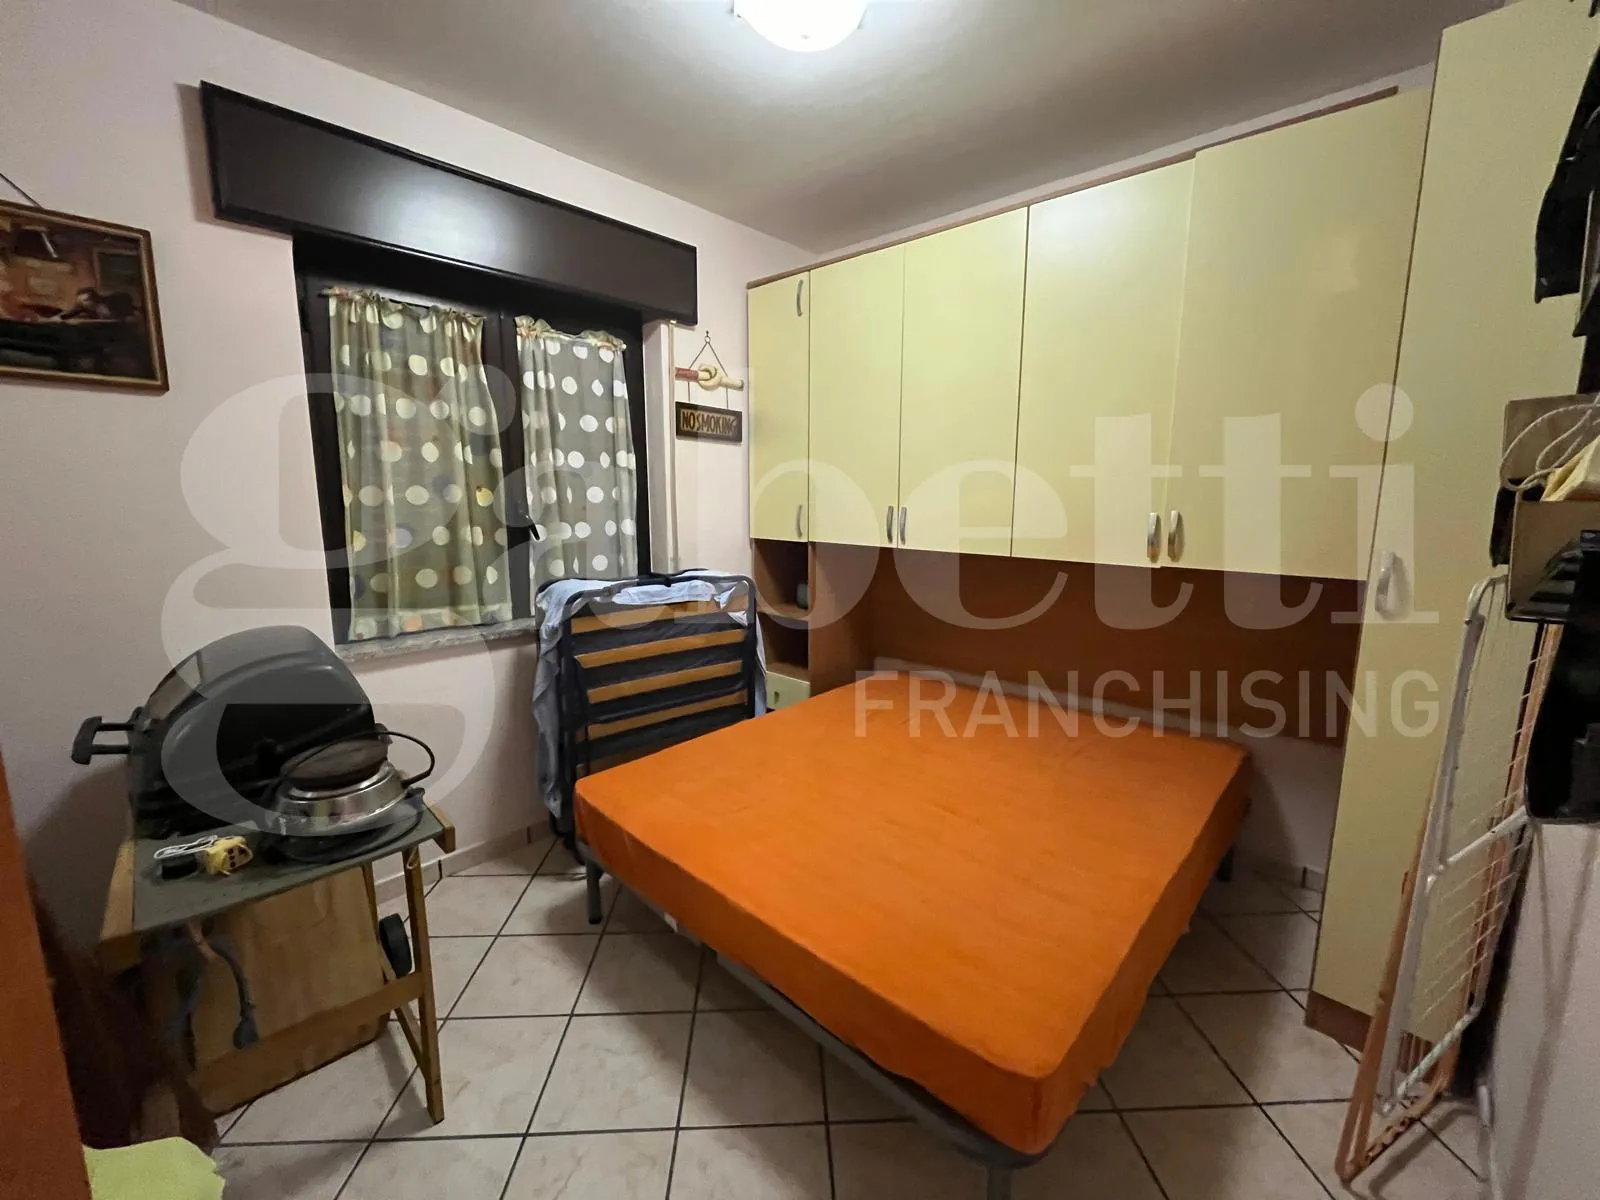 Immagine per Appartamento in vendita a Maierà via Contrada Ariesta